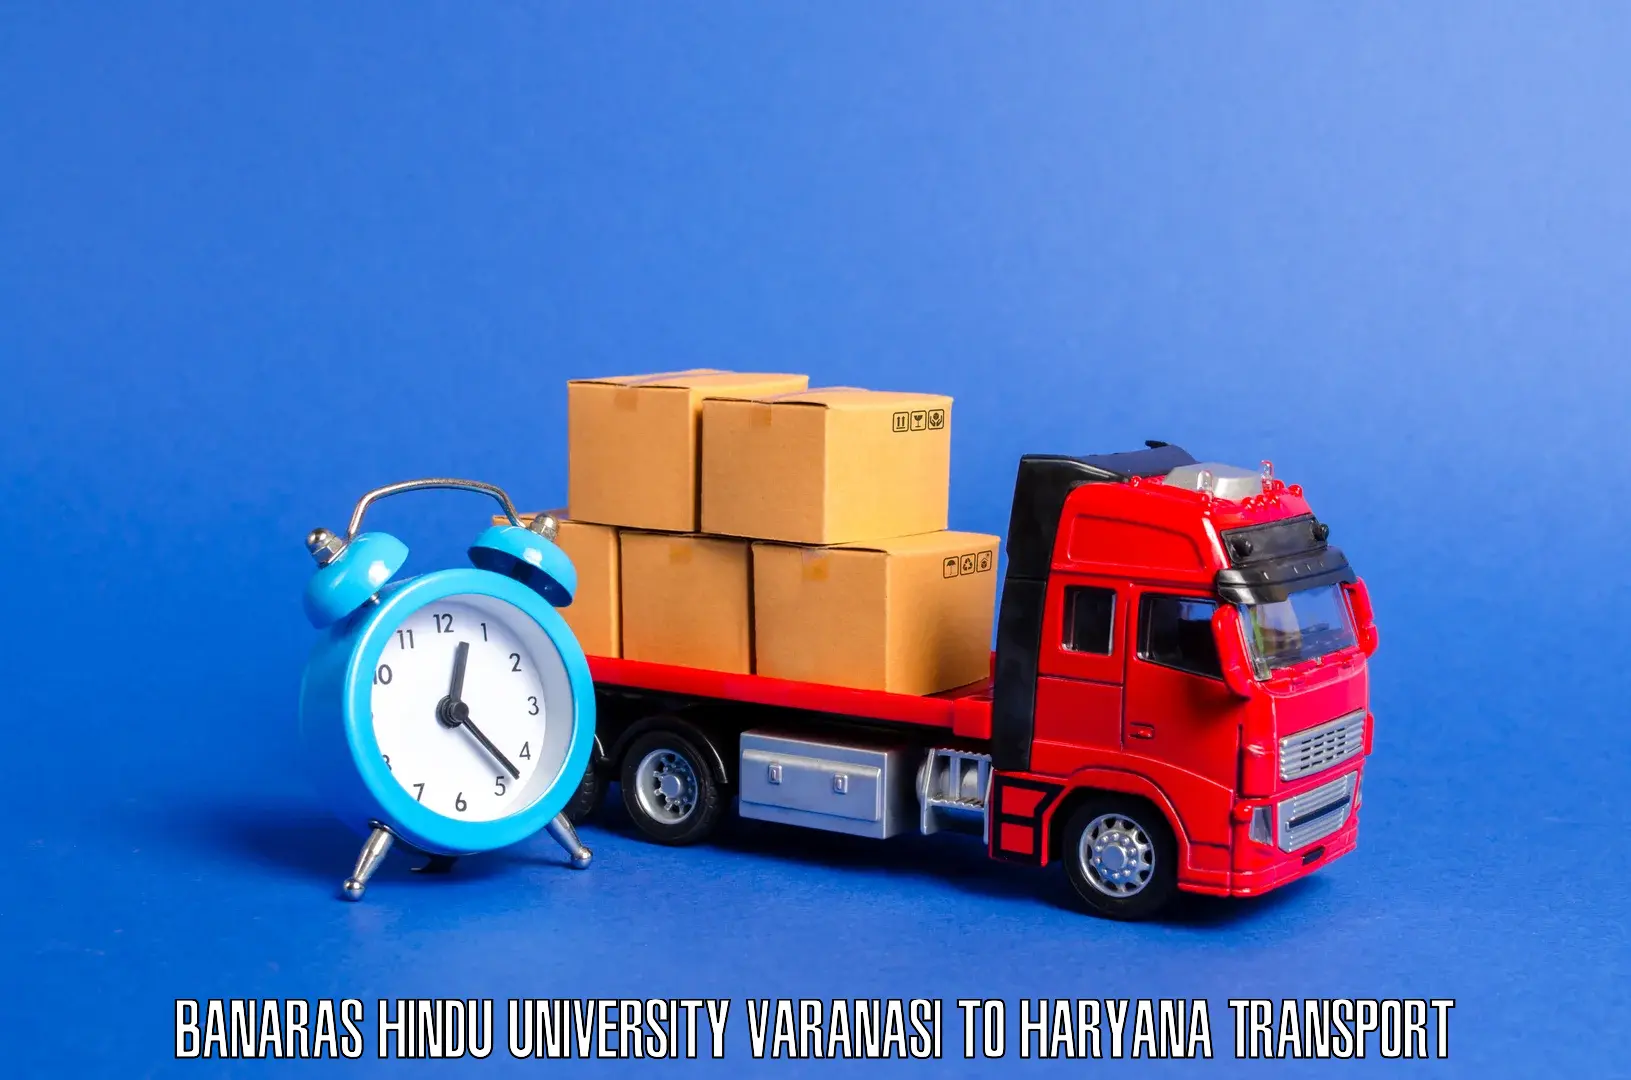 Logistics transportation services in Banaras Hindu University Varanasi to Jhajjar